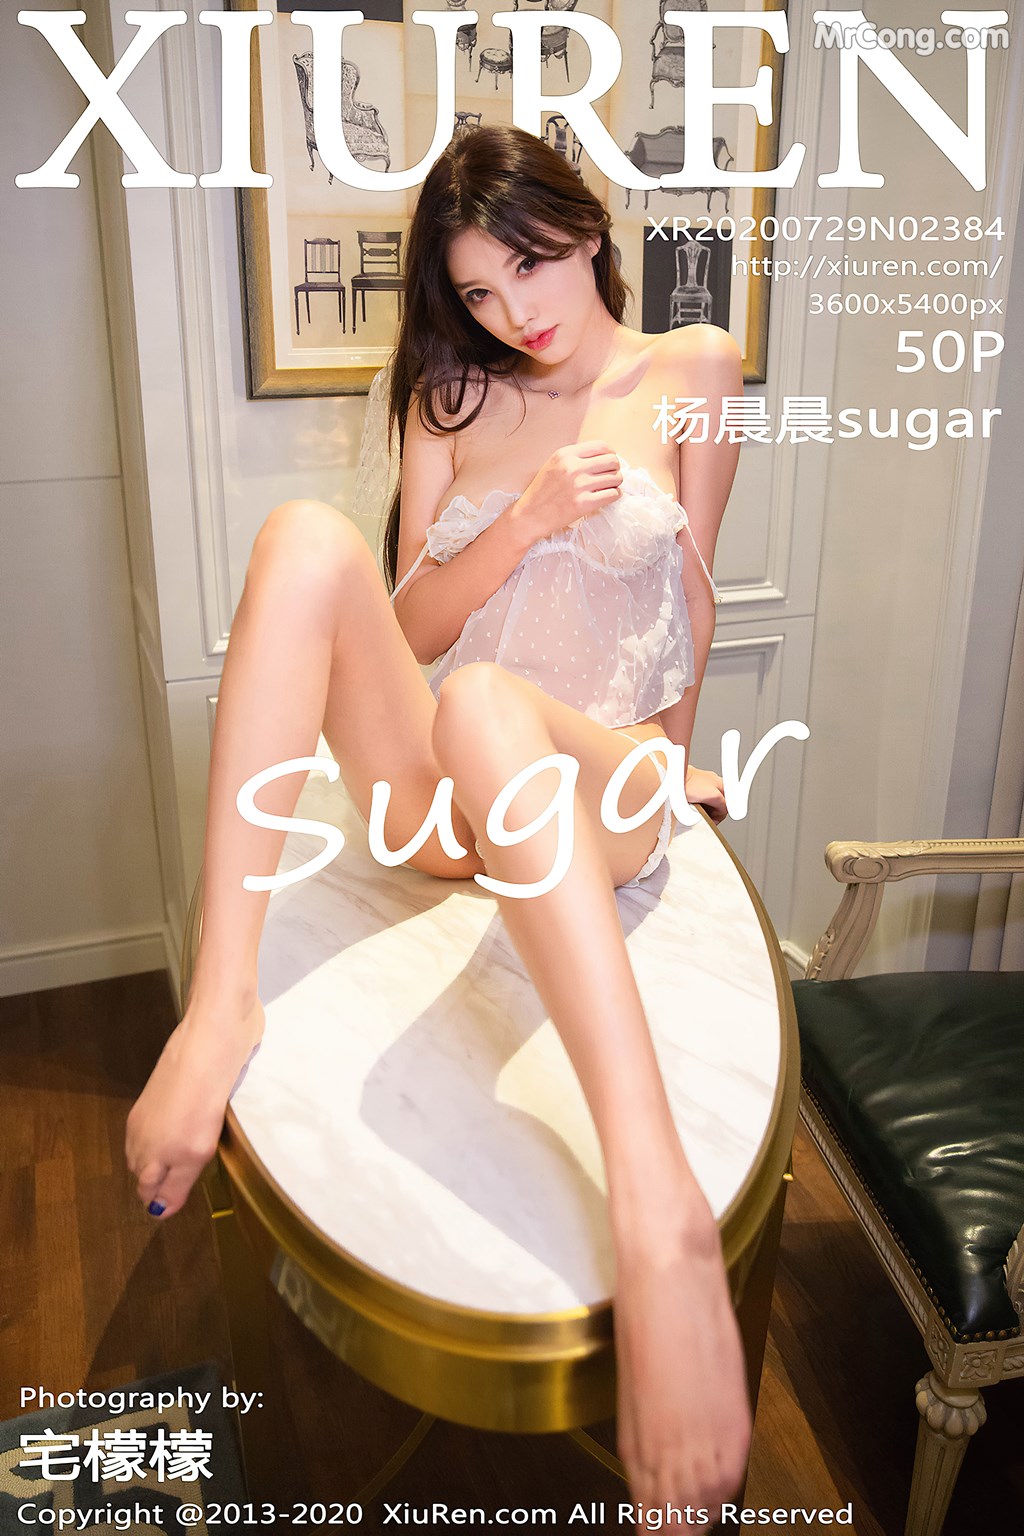 [XIUREN] No.2384 Yang Chen Chen 杨晨晨sugar Cover Photo